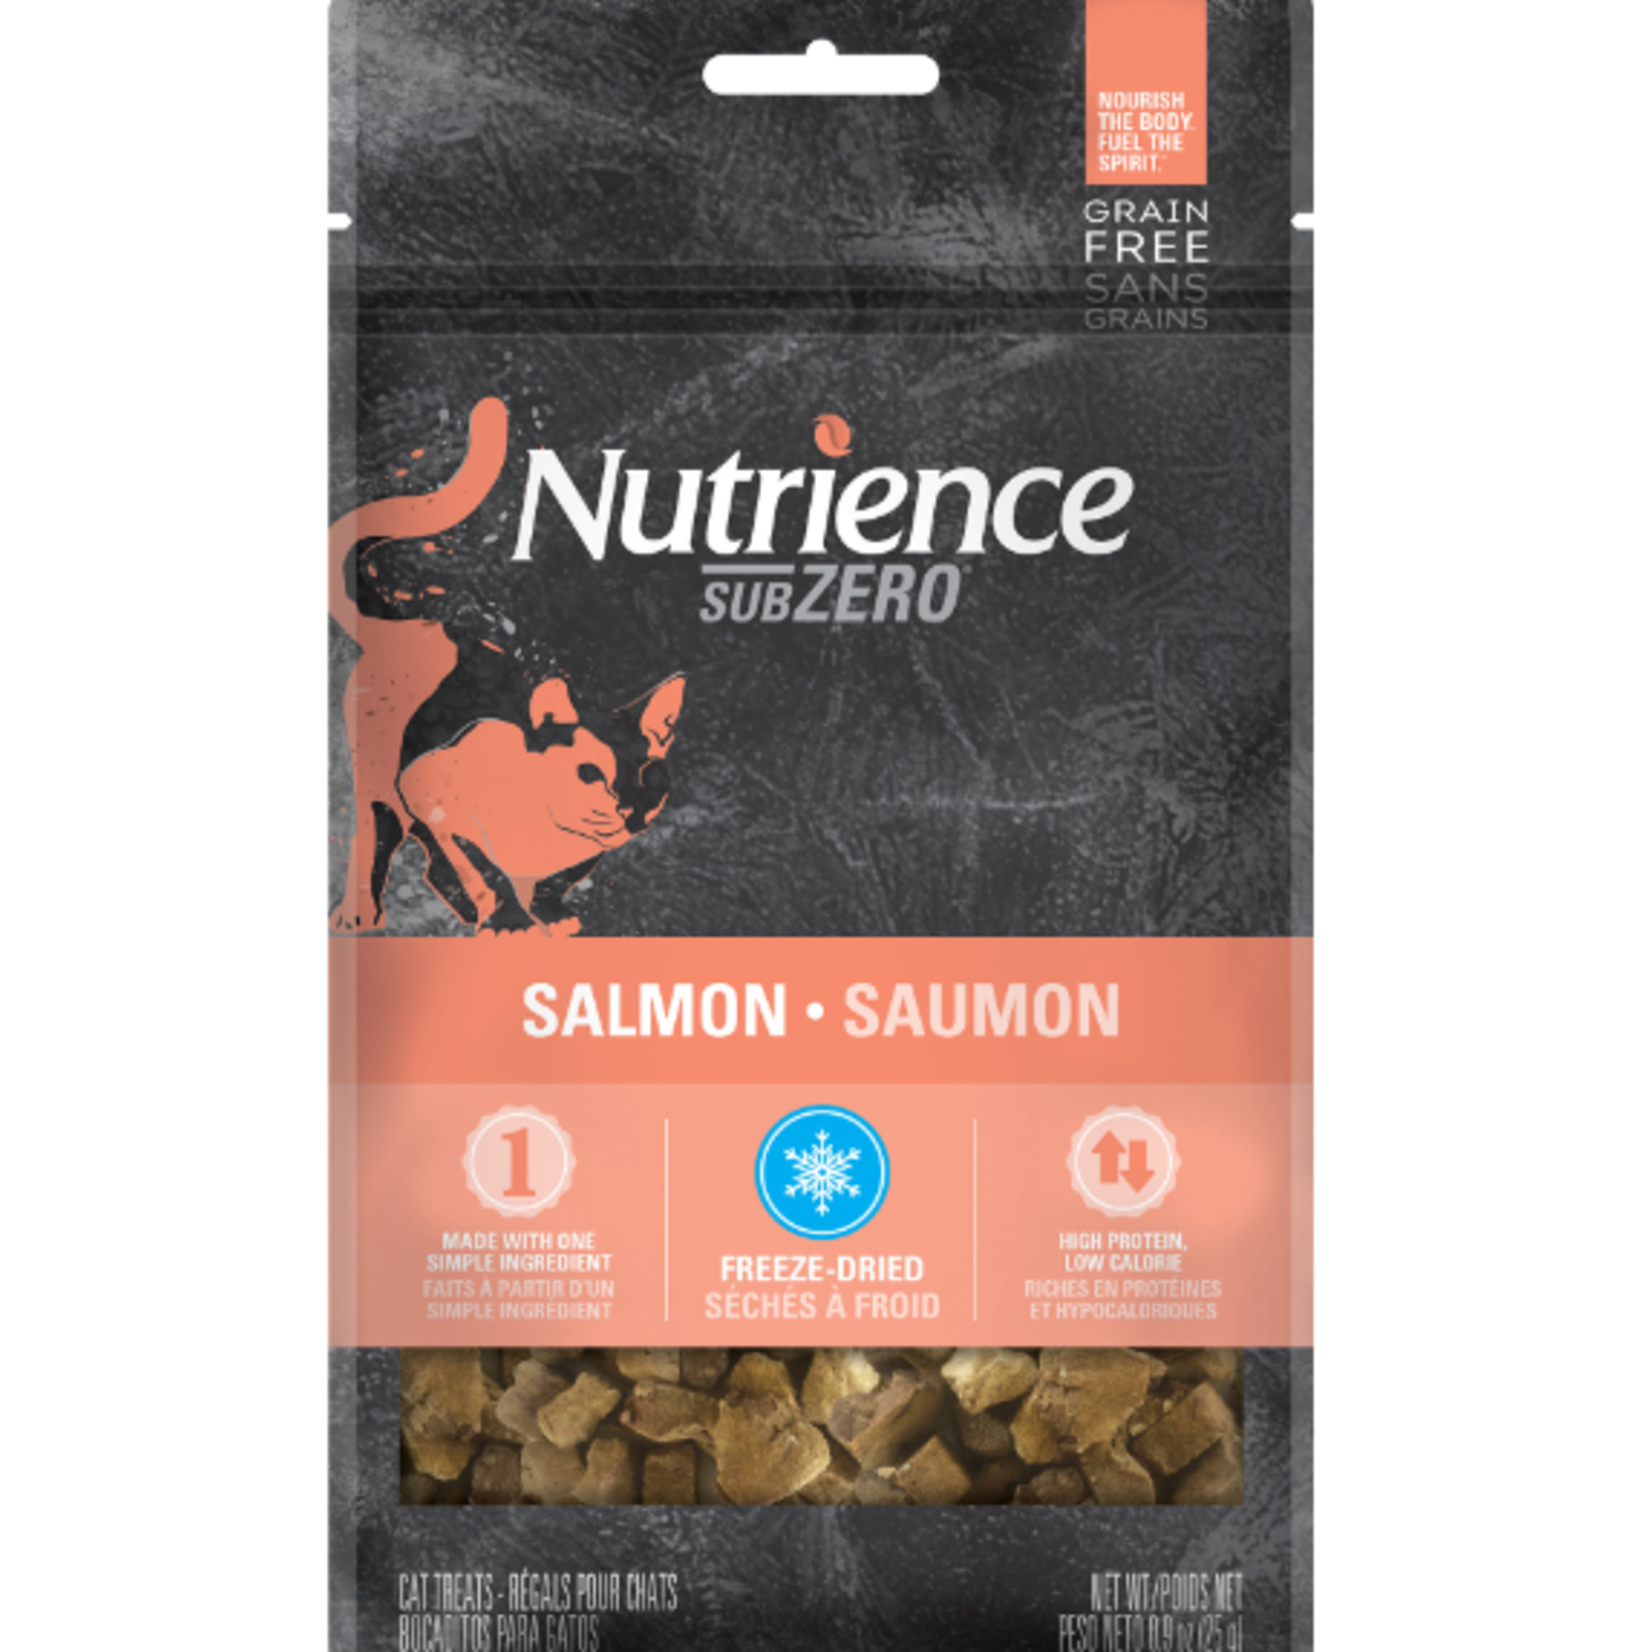 Nutrience Grain Free - Subzero - Single Protein Treats - Salmon - 25 g